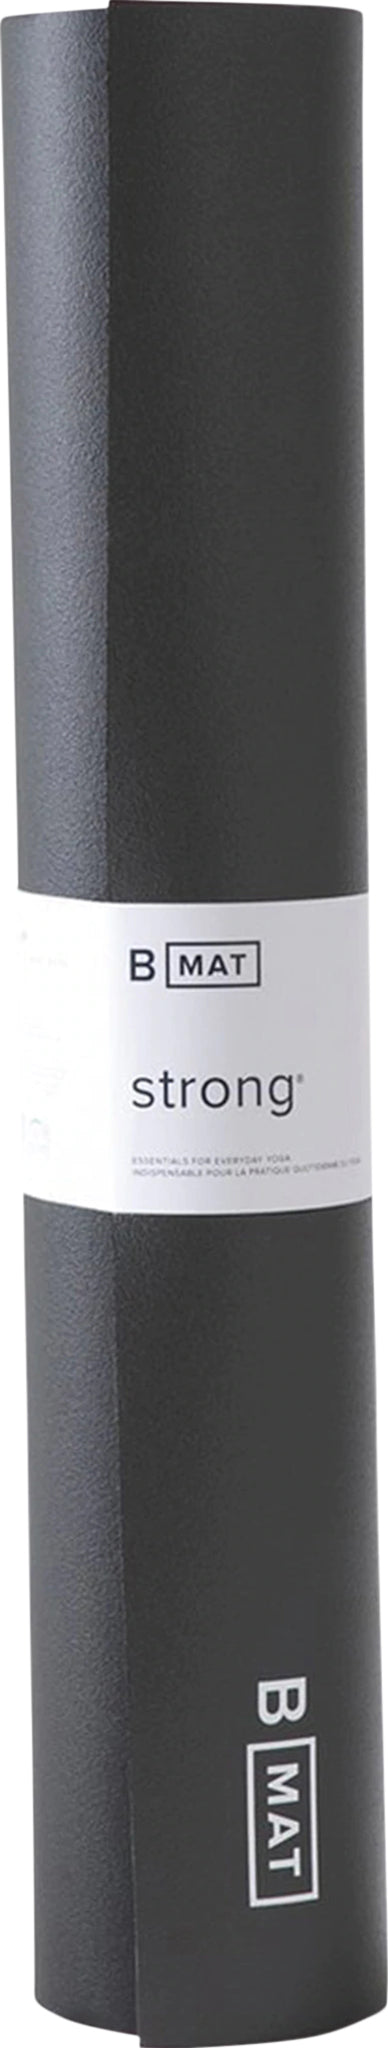 6mm Strong - BMat